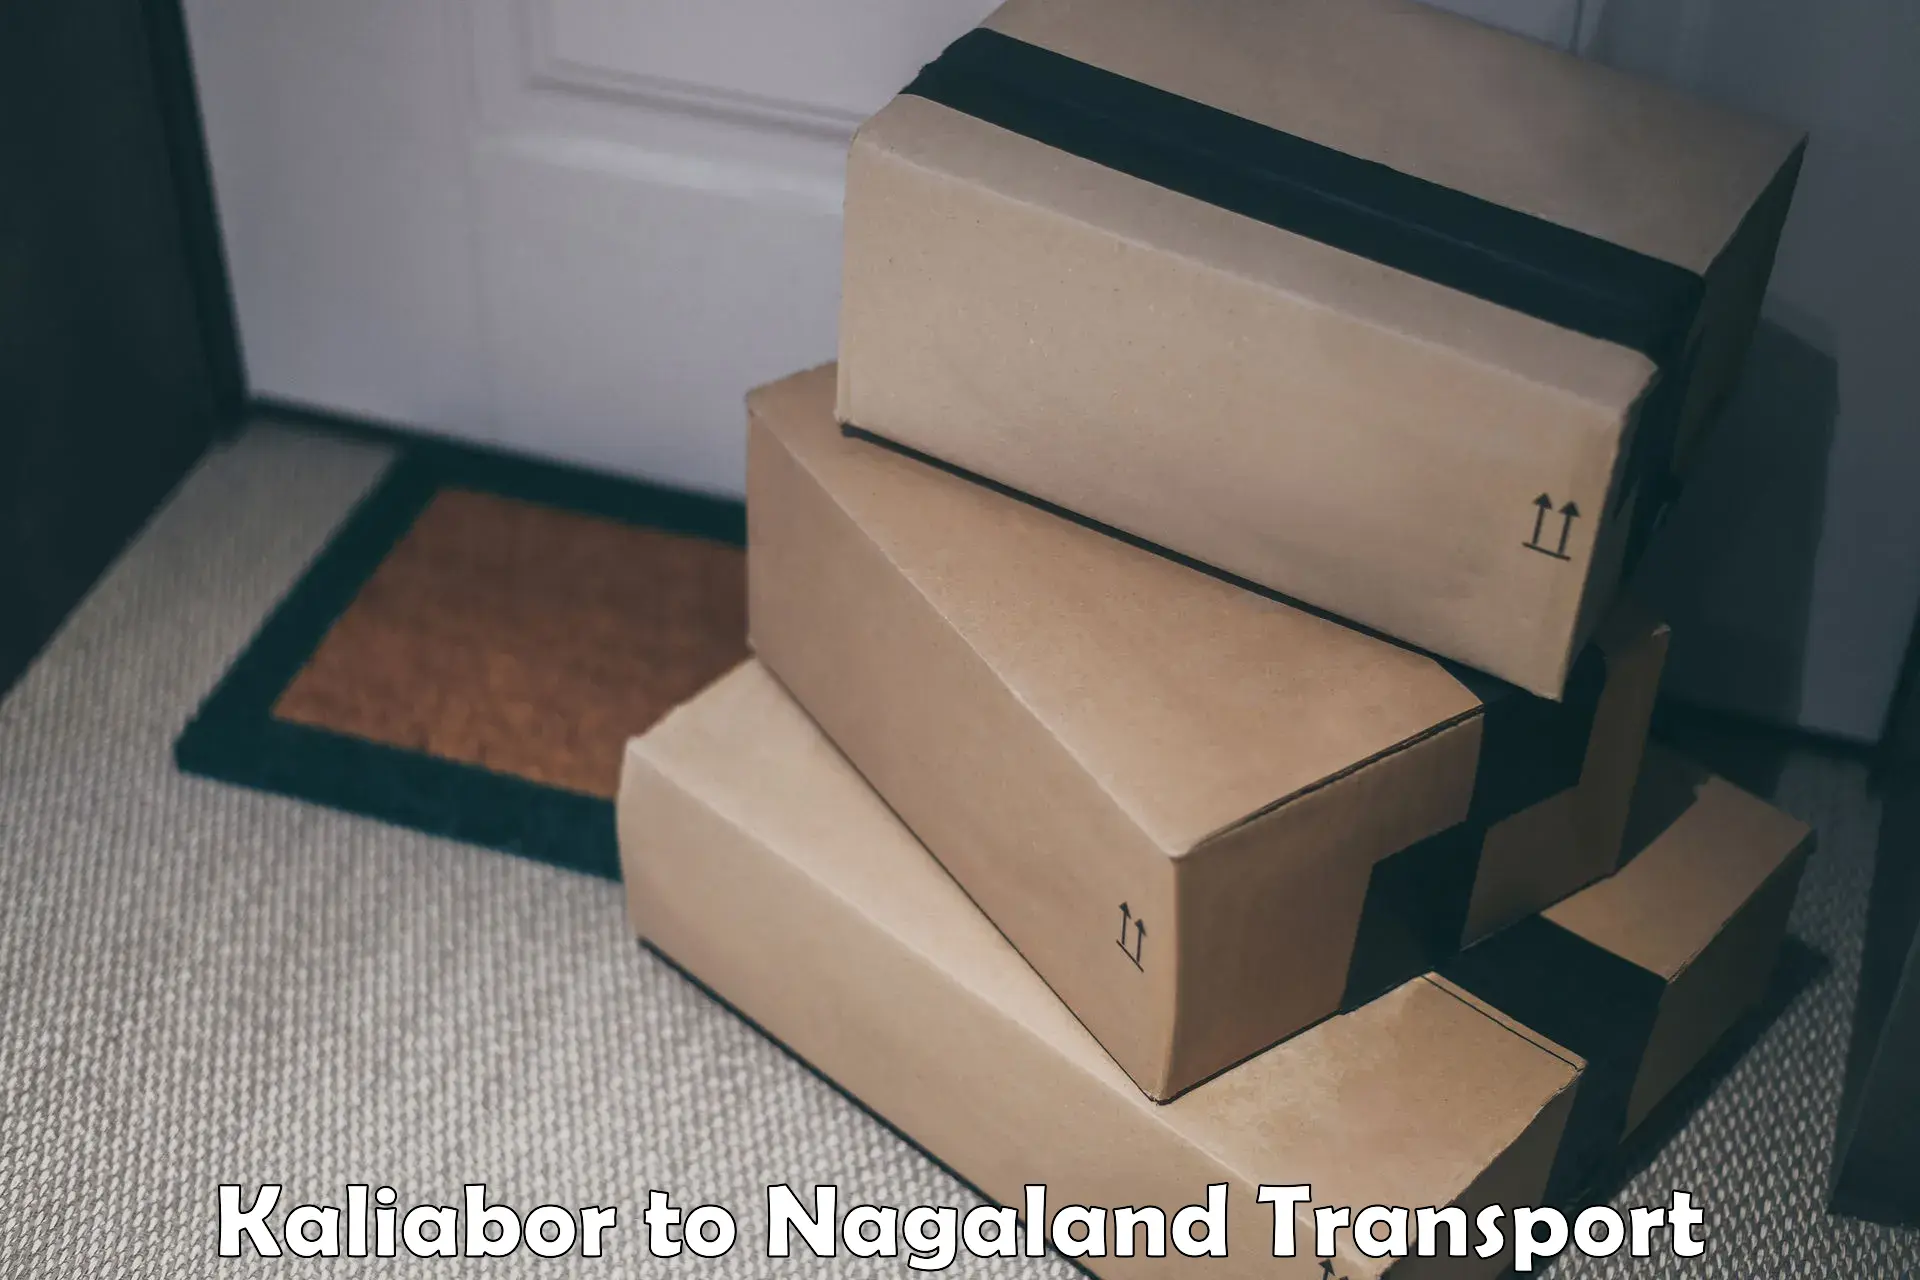 Shipping partner Kaliabor to NIT Nagaland